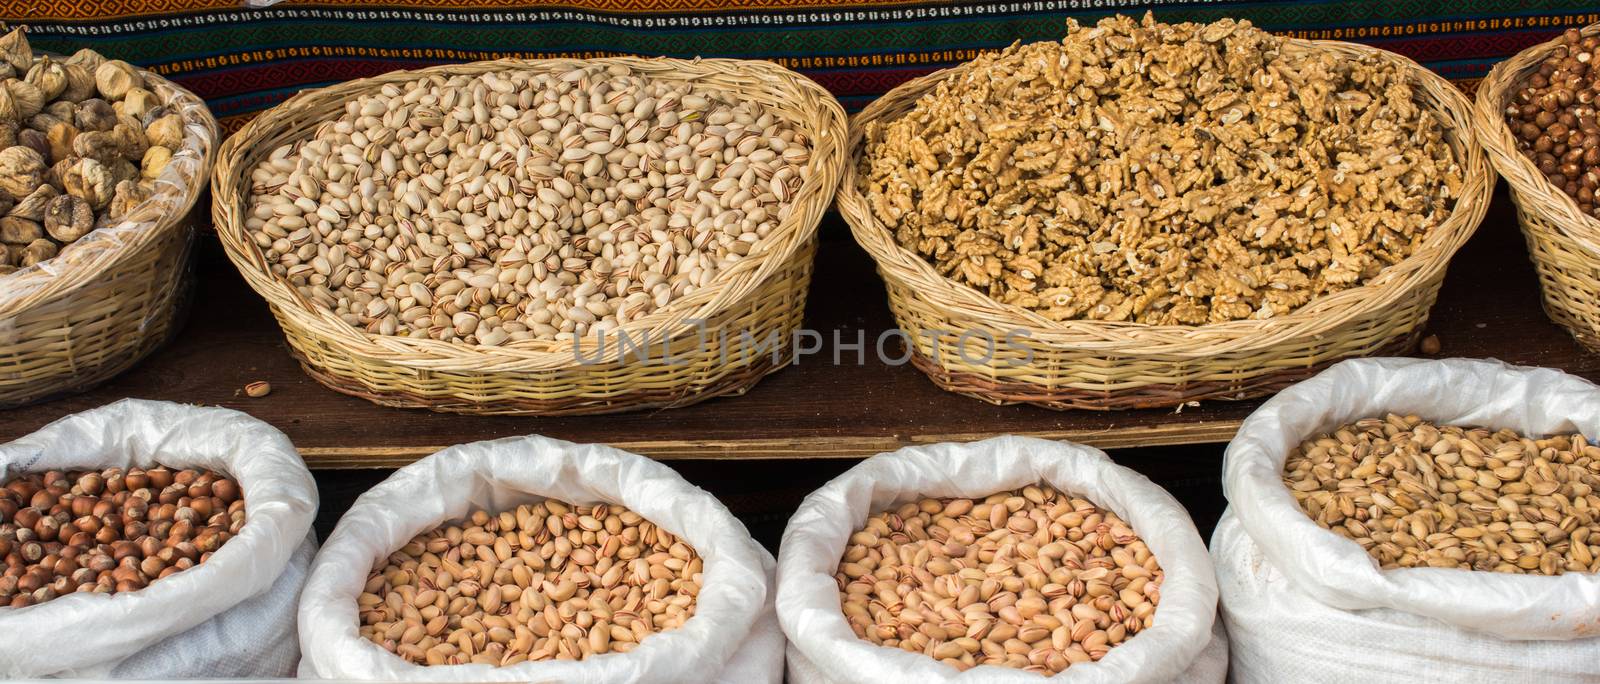 Walnuts, pistachios and hazelnuts in straw baskets and sacks by berkay